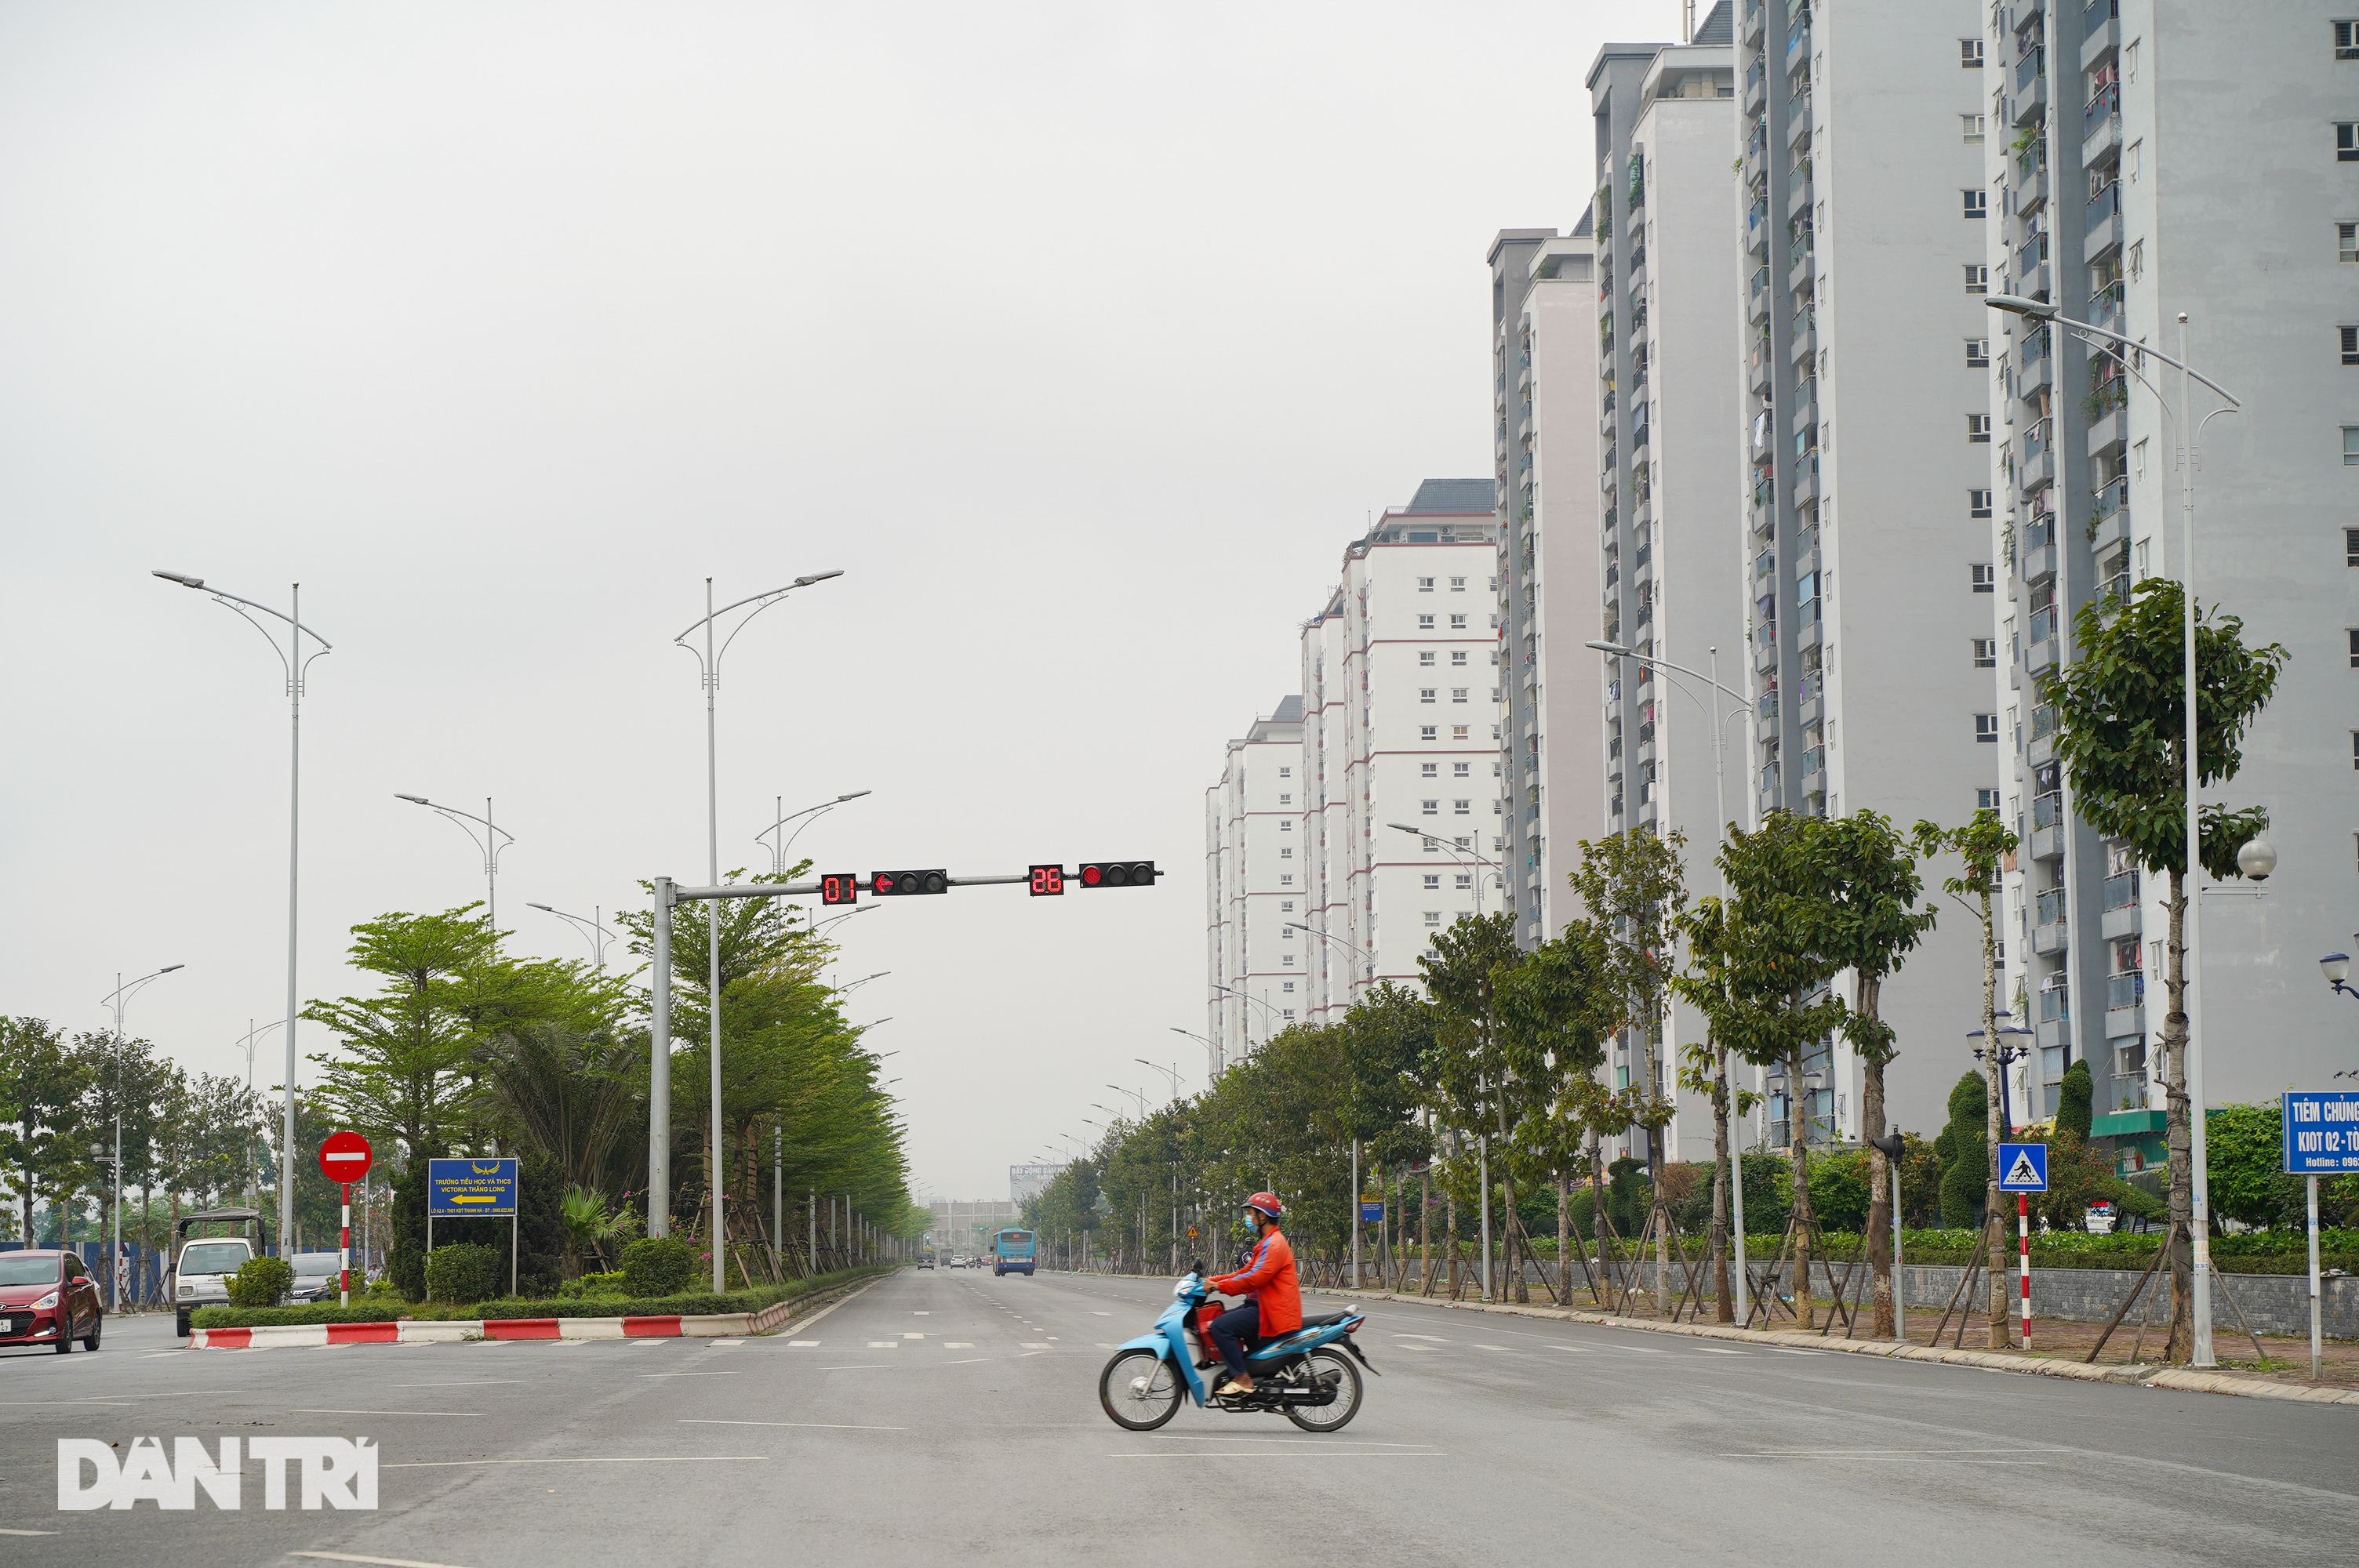 Toàn cảnh tuyến đường hơn 7.500 tỷ đồng kết nối 4 quận, huyện ở Hà Nội - 12